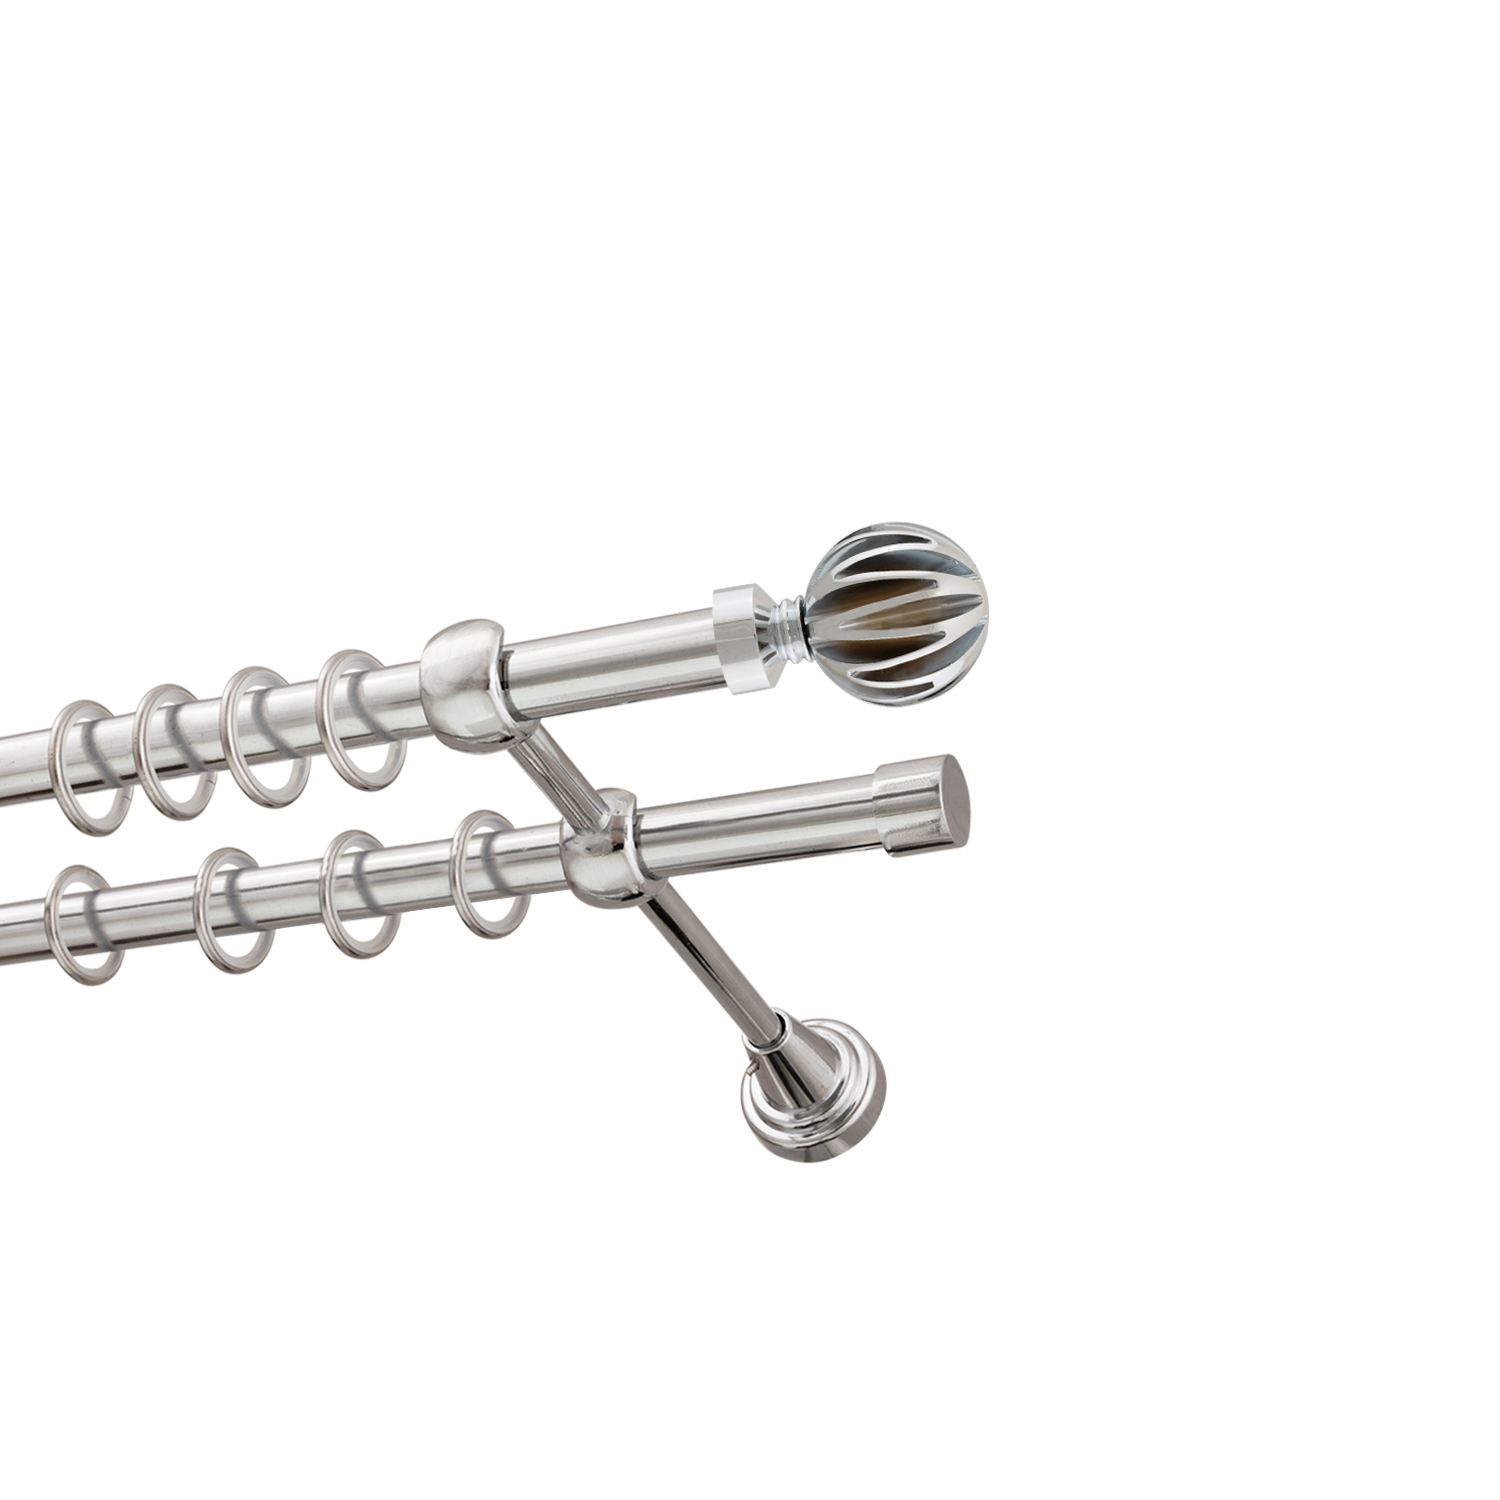 Металлический карниз для штор Шафран, двухрядный 16/16 мм, серебро, гладкая штанга, длина 140 см - фото Wikidecor.ru